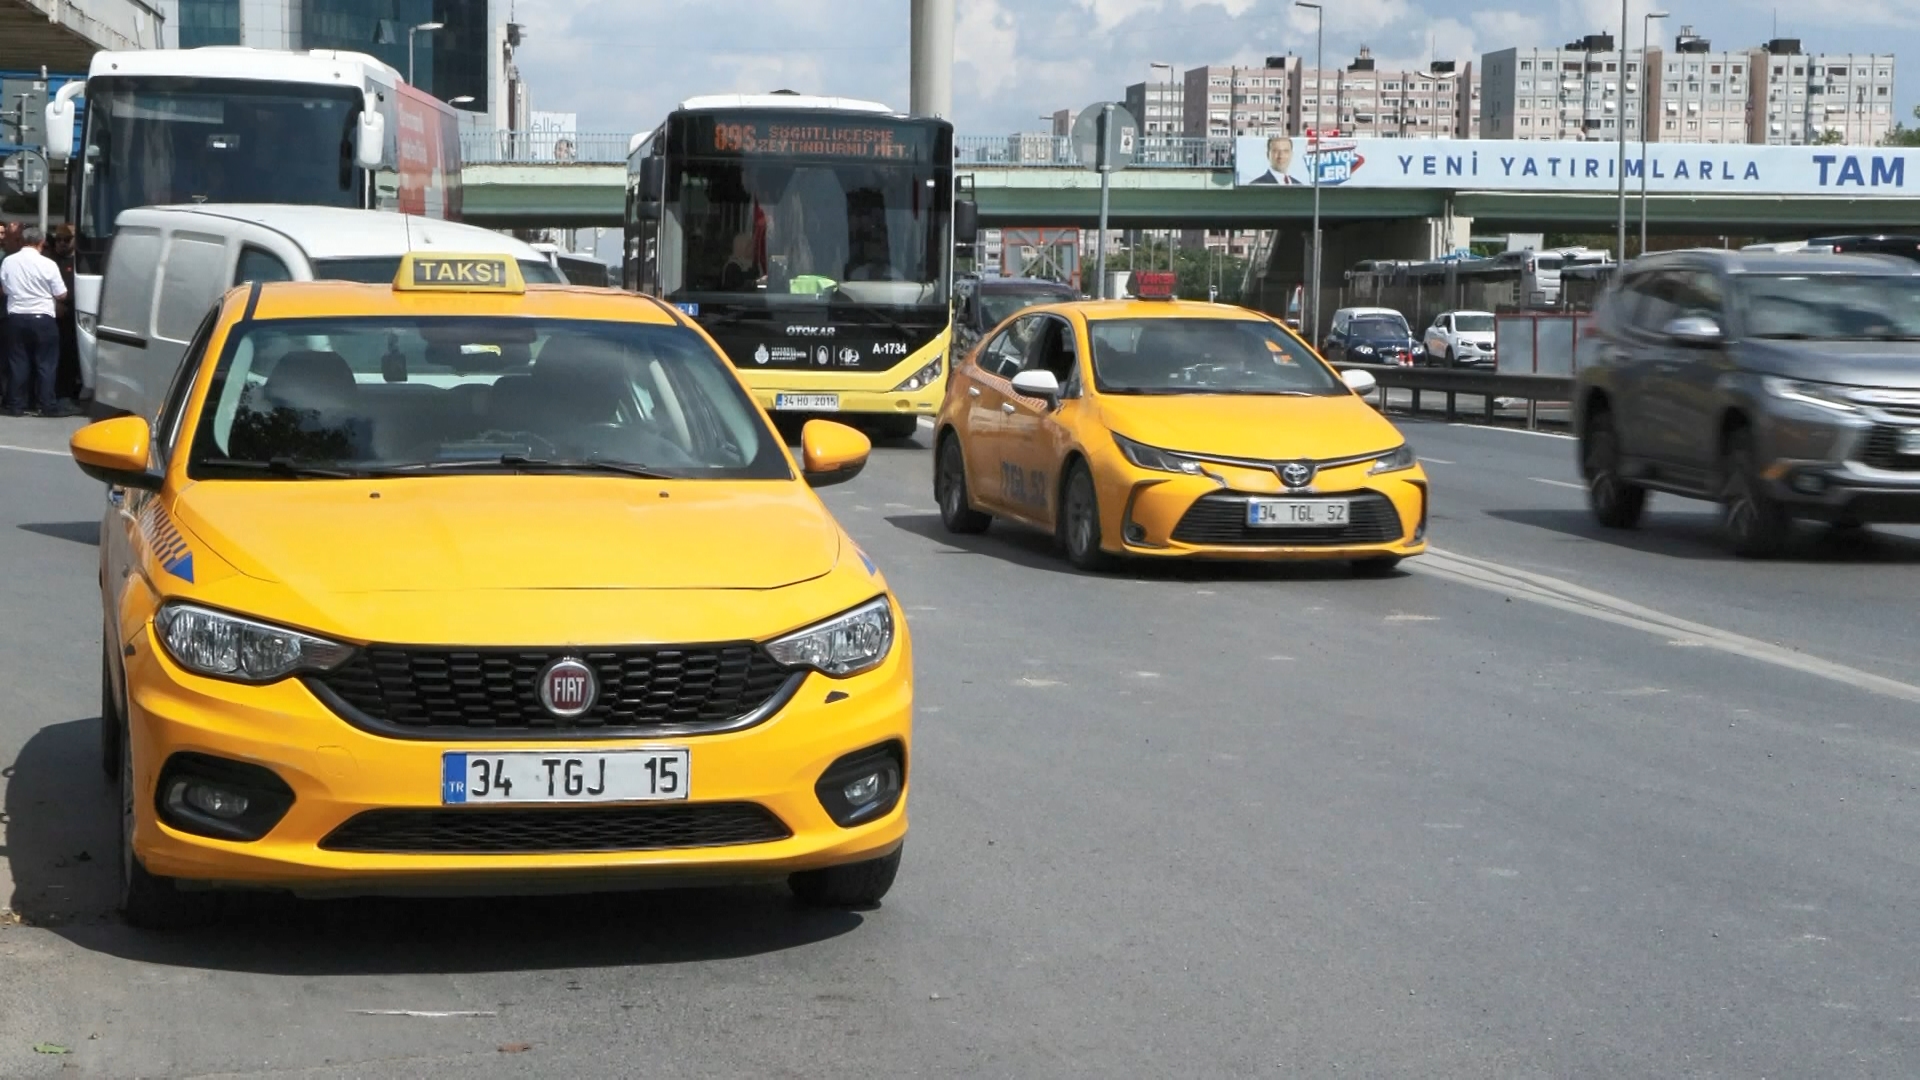 İstanbul - İstanbul Taksiciler Esnaf Odası Başkanı: İBB'de